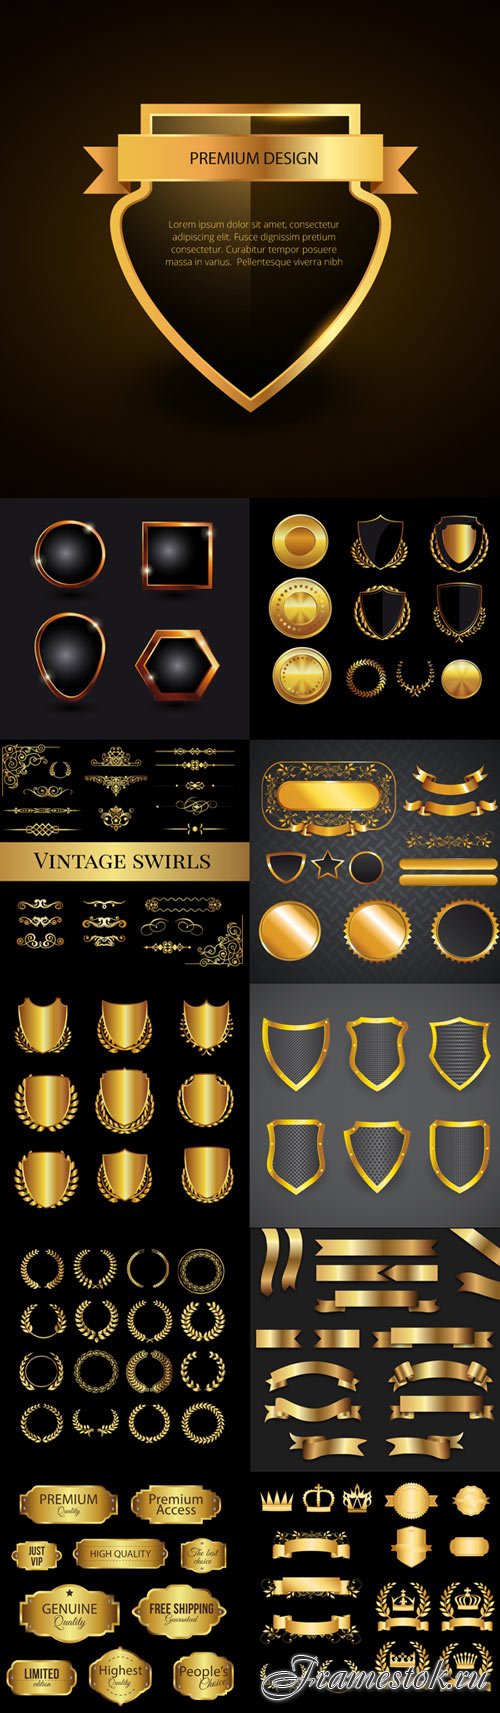 Golden graphic elements vector